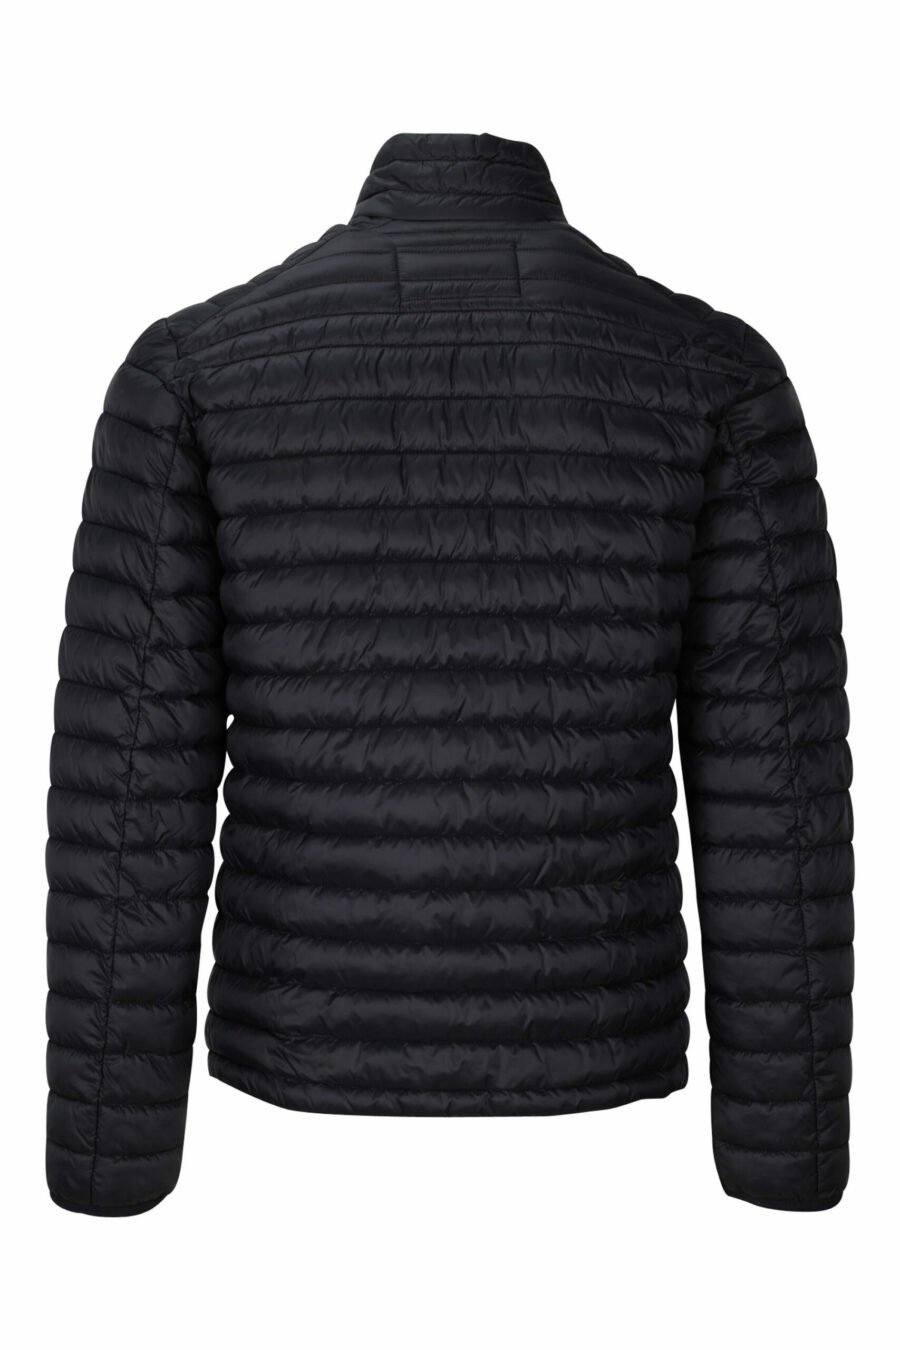 Schwarze Jacke mit monochromem Mini-Logo - 4062226382939 1 skaliert